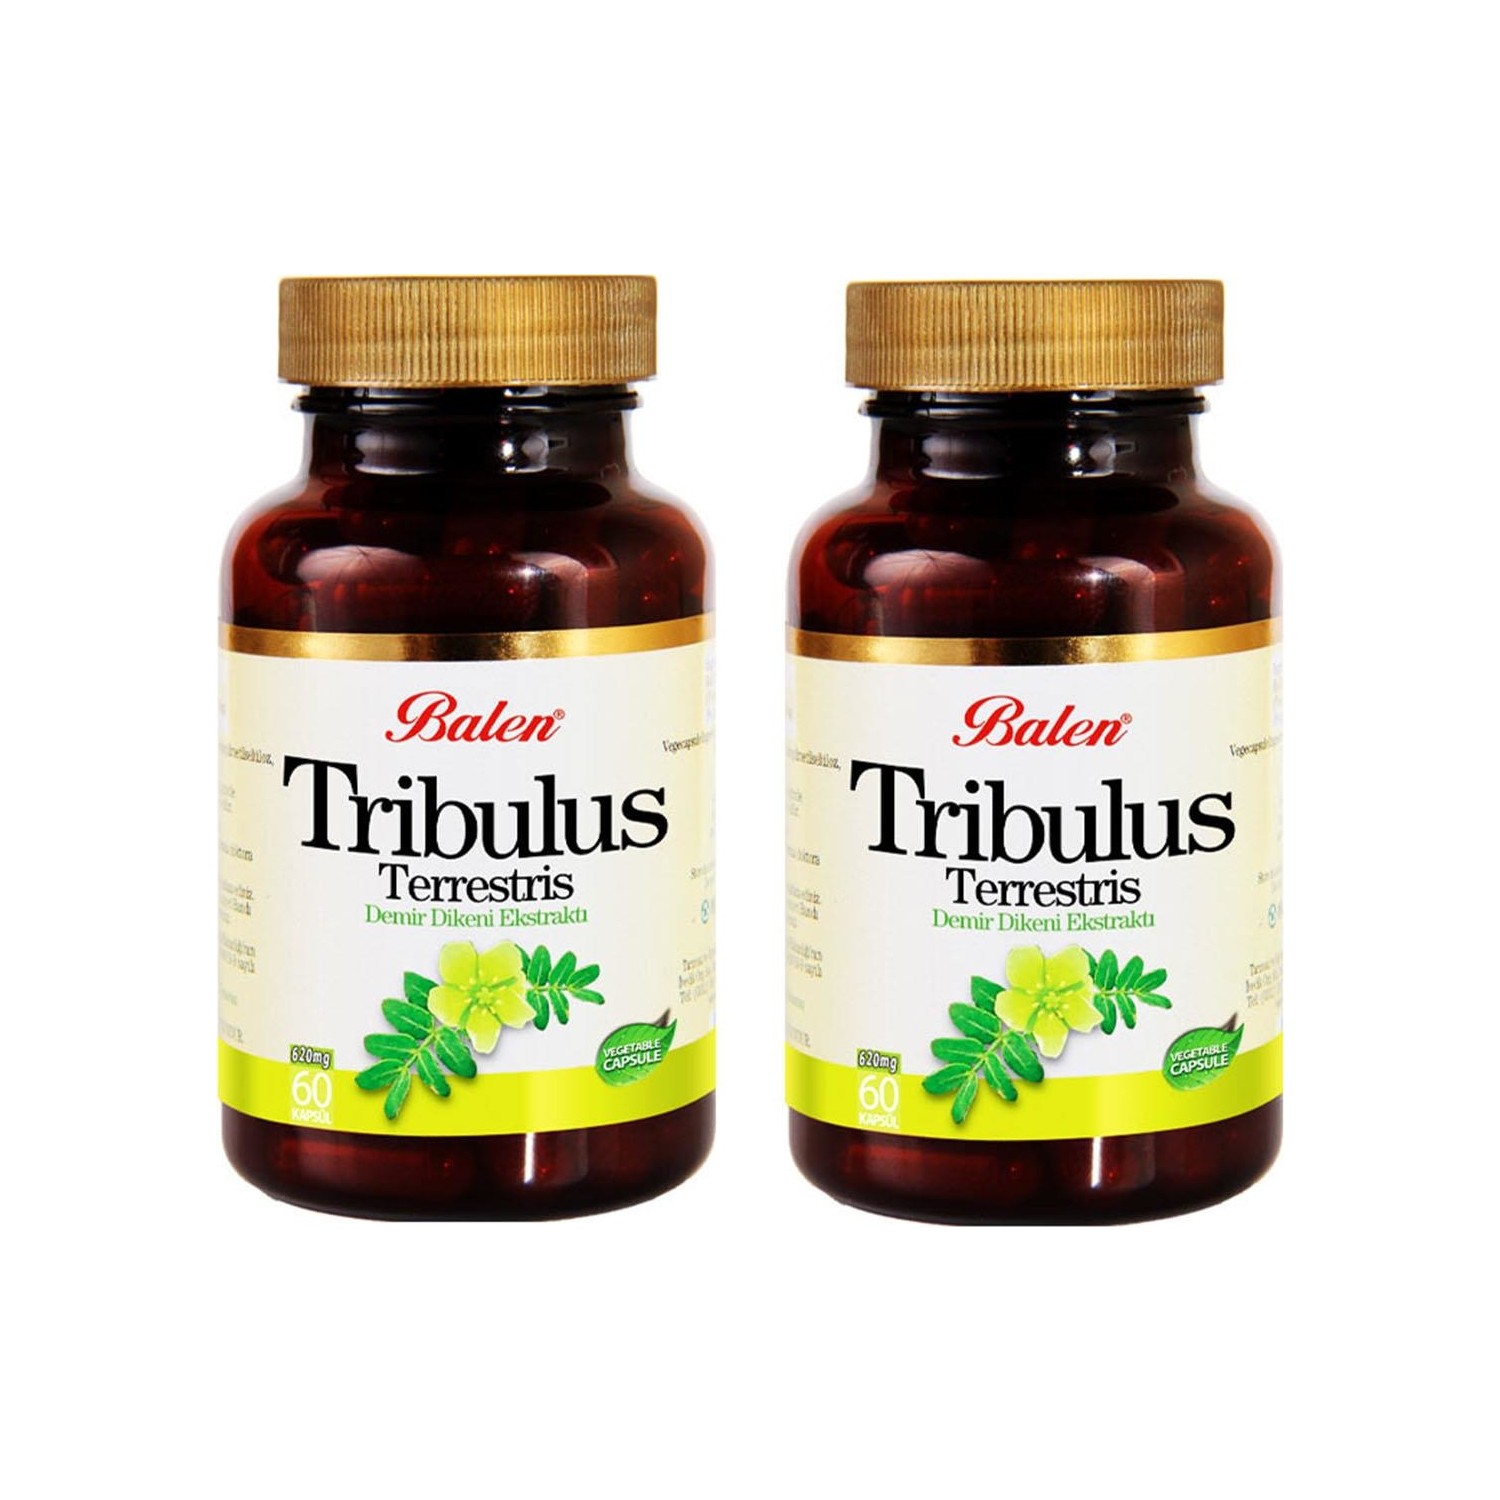 Пищевая добавка Balen Tribulus Terrestris 620 мг, 2 упаковки по 60 капсул пищевая добавка balen tribulus terrestris 500 мг 2 упаковки по 60 капсул